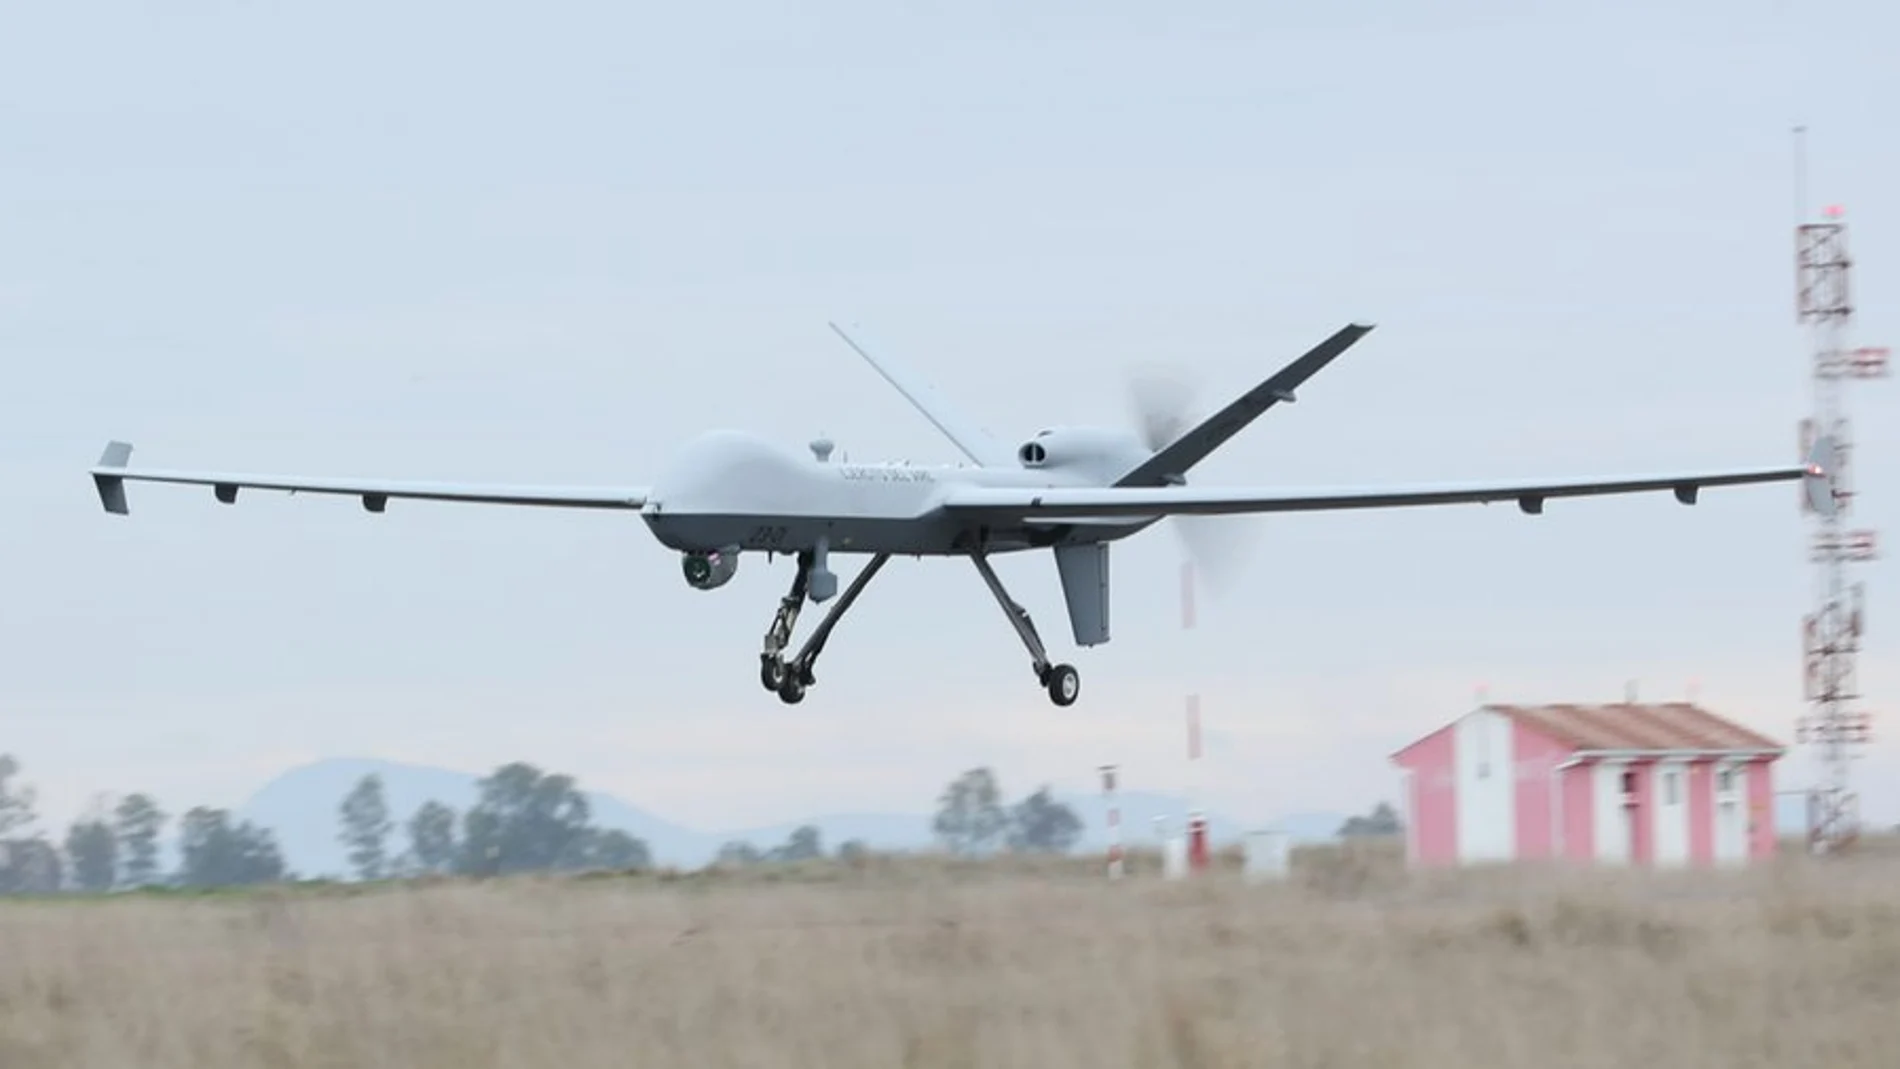 Dron Predator del Ejército del Aire